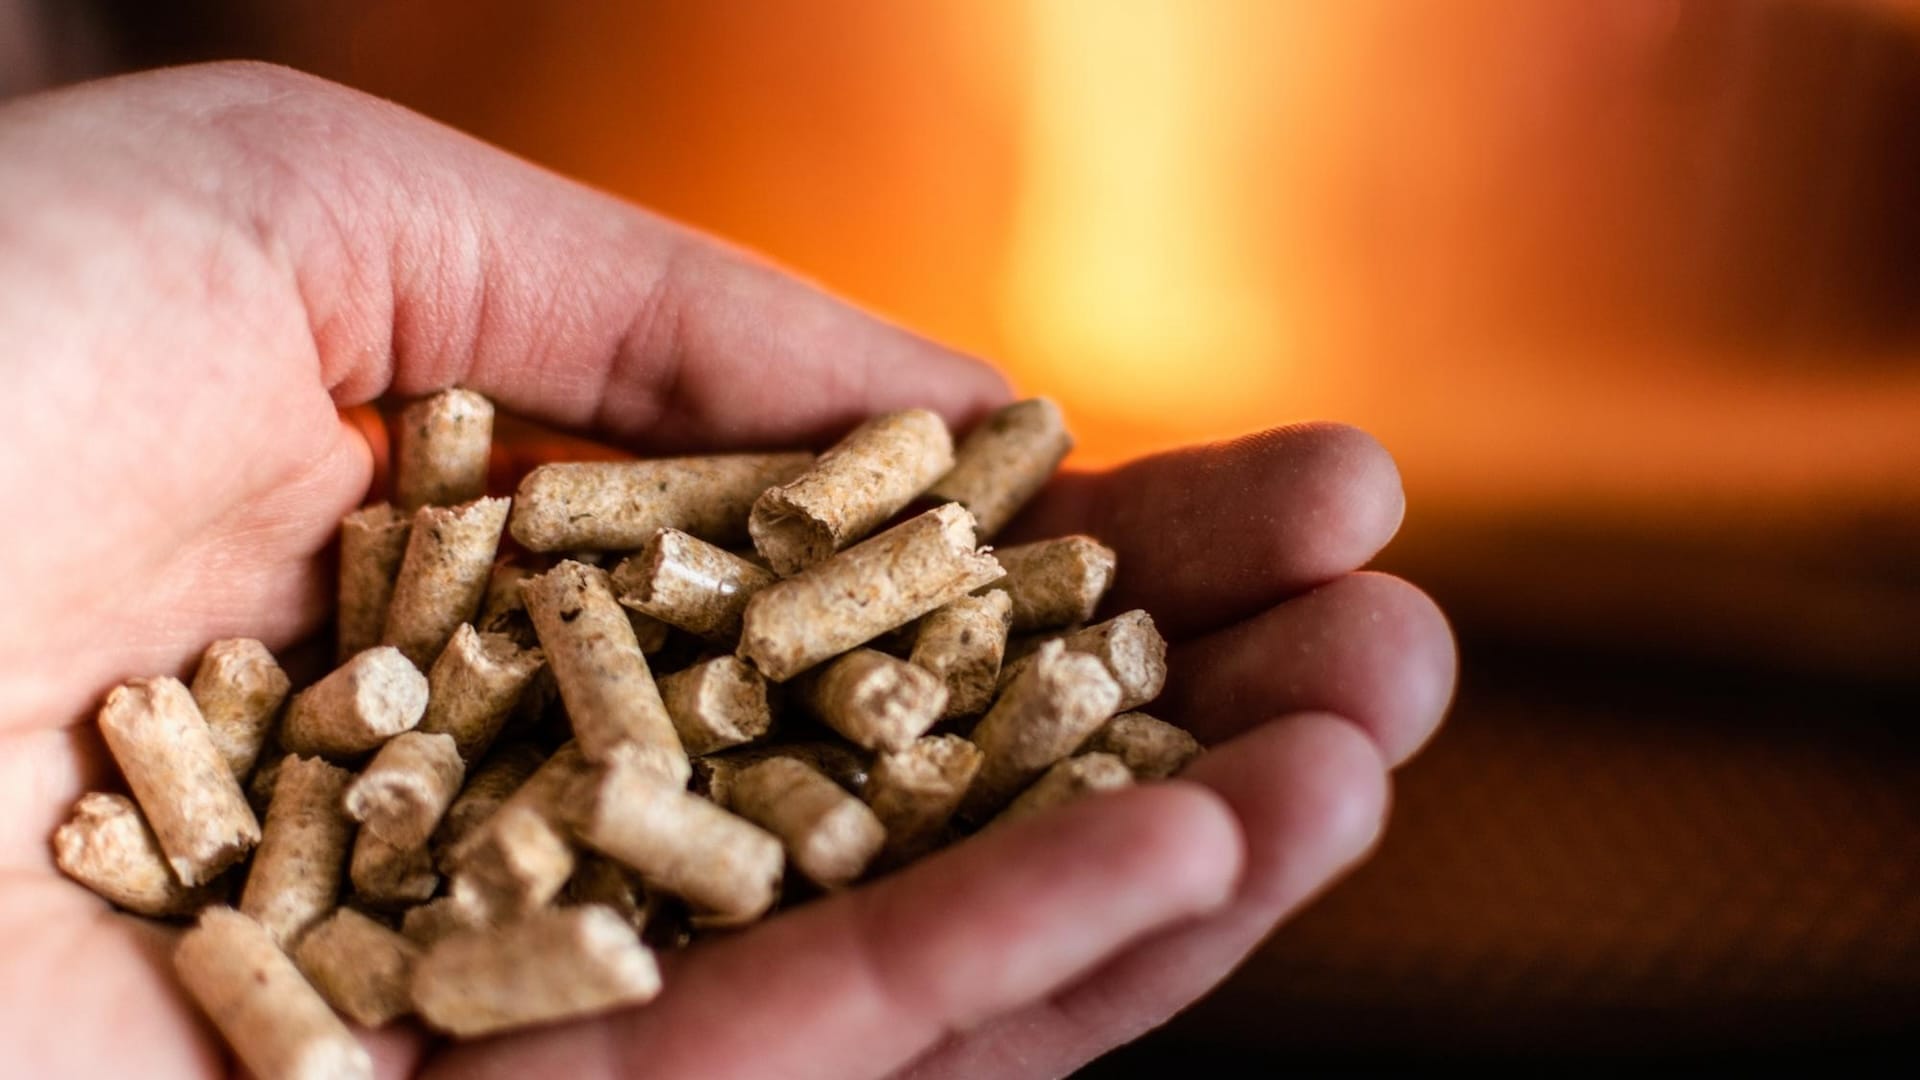 Az energianövények termesztése a biomassza egyik legfontosabb területe.